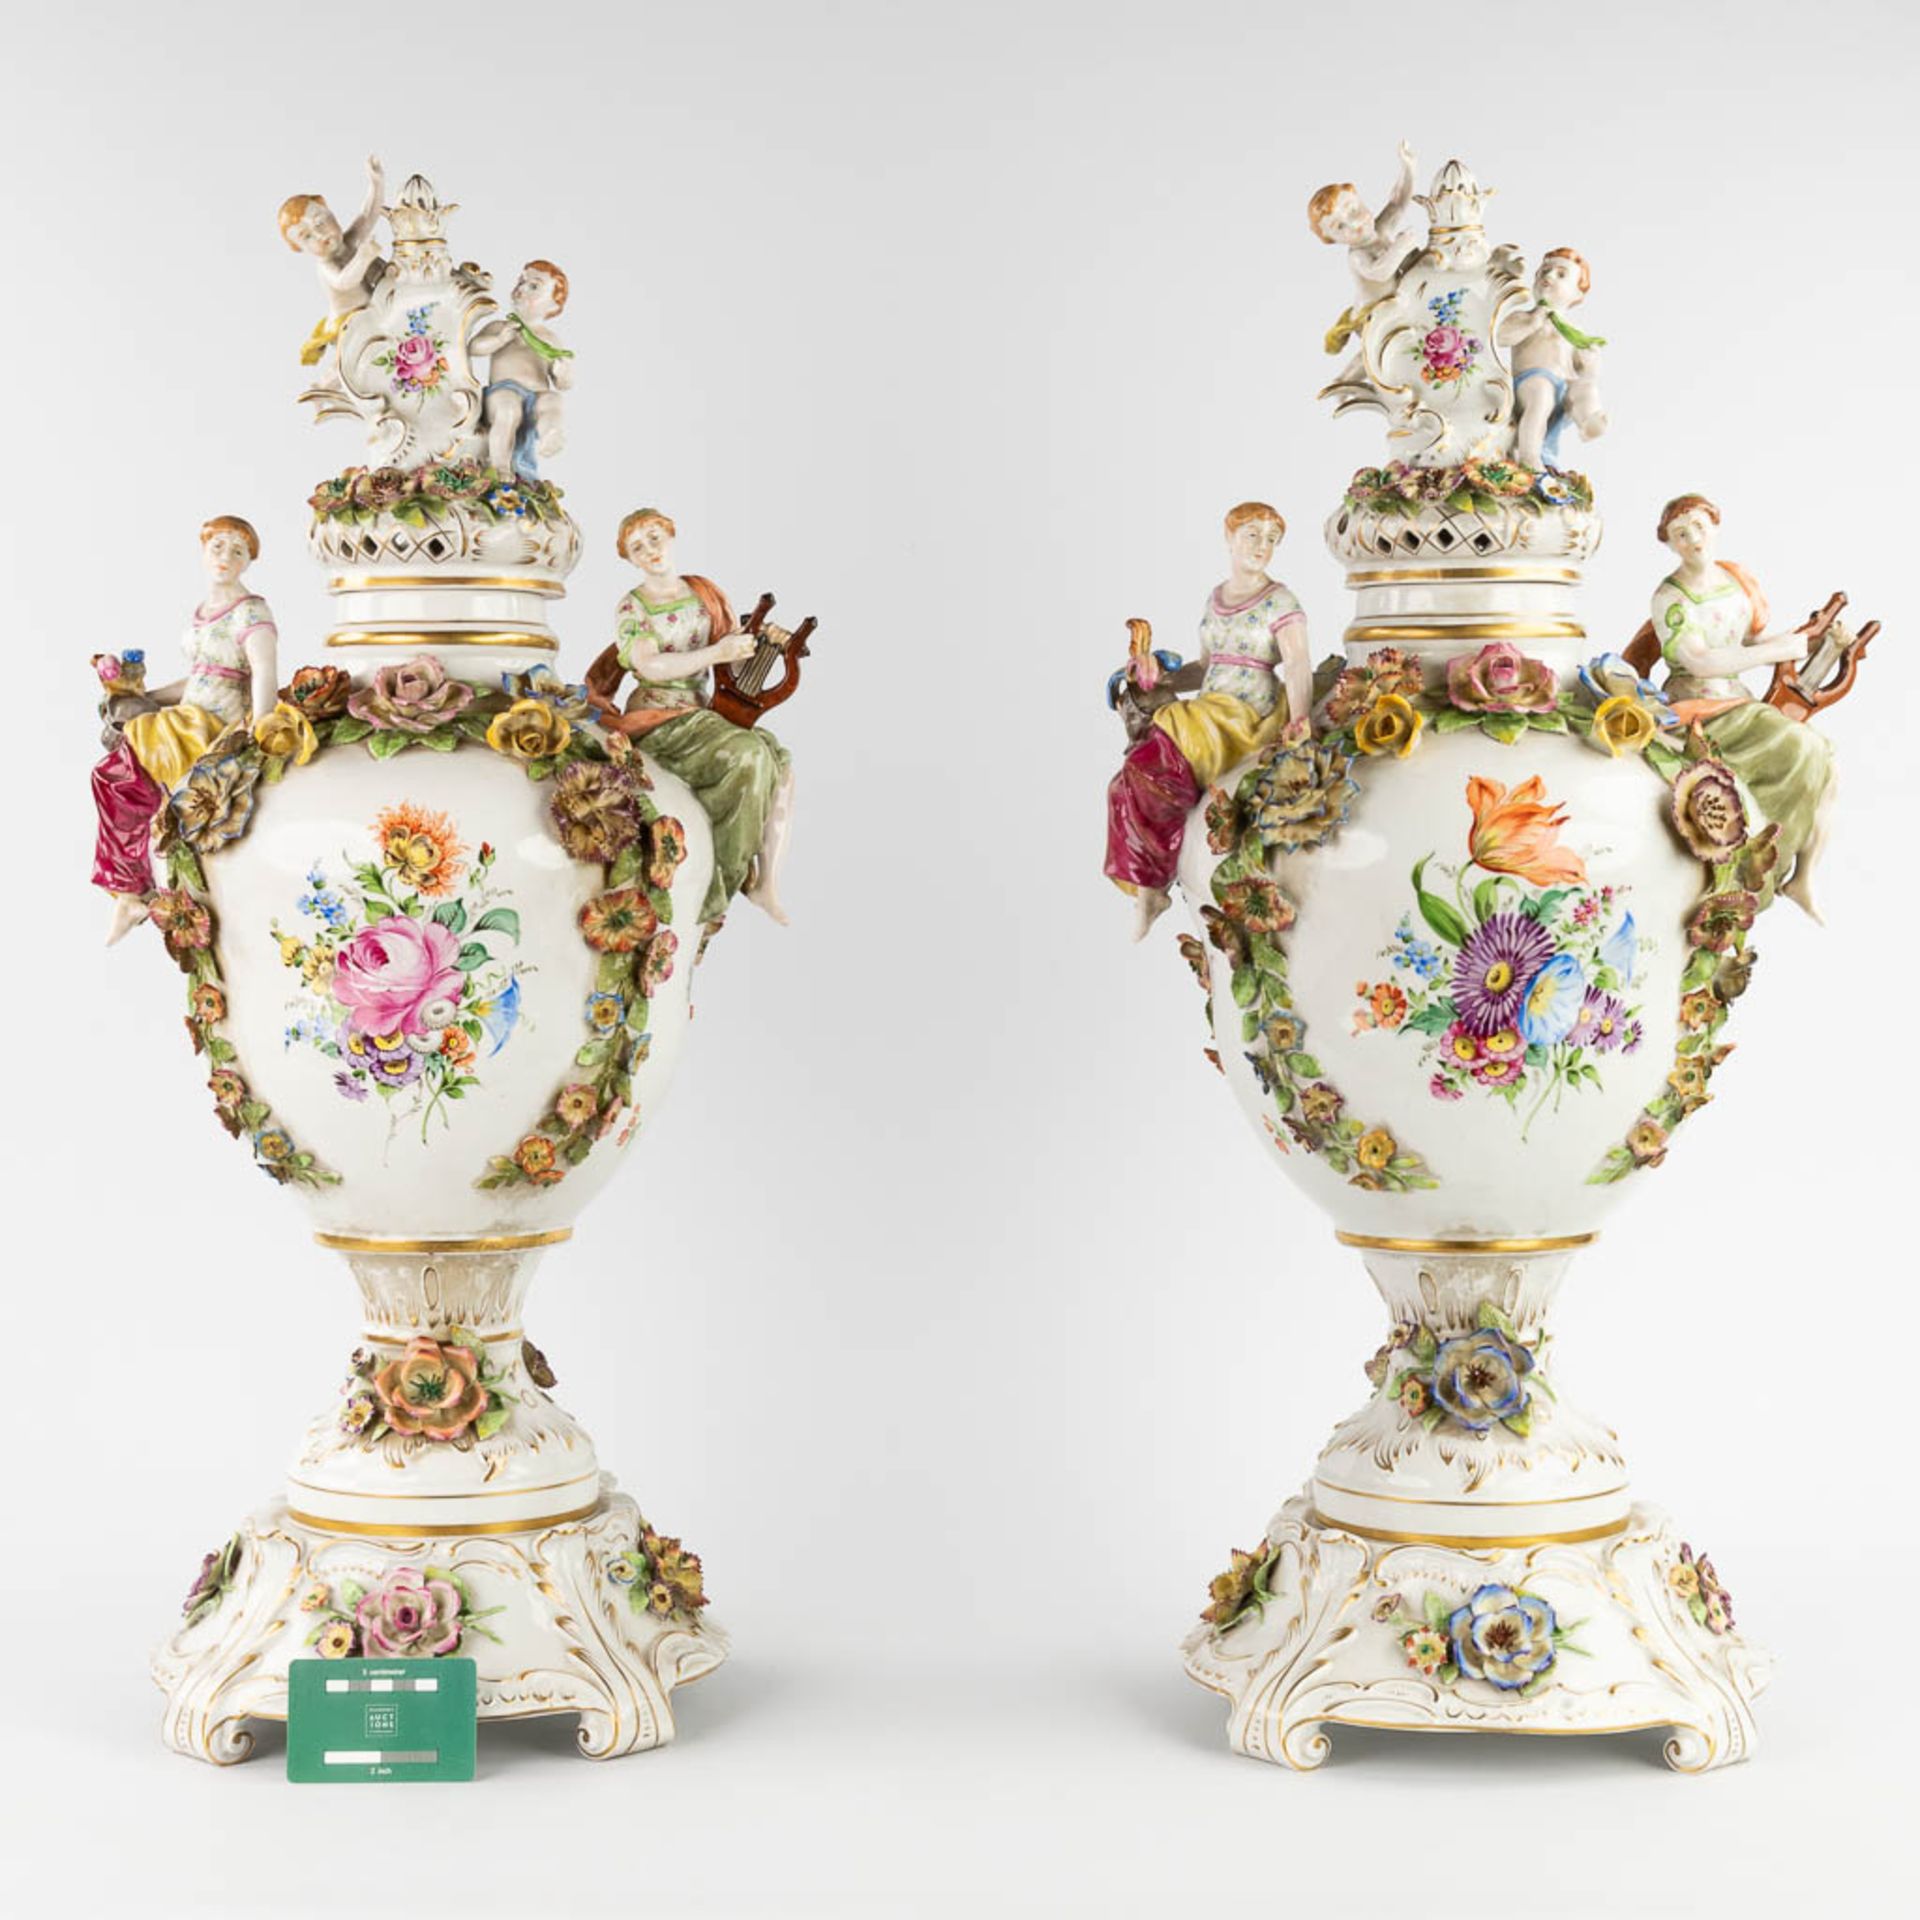 Von Schierholz, Plaue, a pair of large porcelain vases on stands. 20th C. (L:25 x W:35 x H:76 cm) - Image 2 of 19